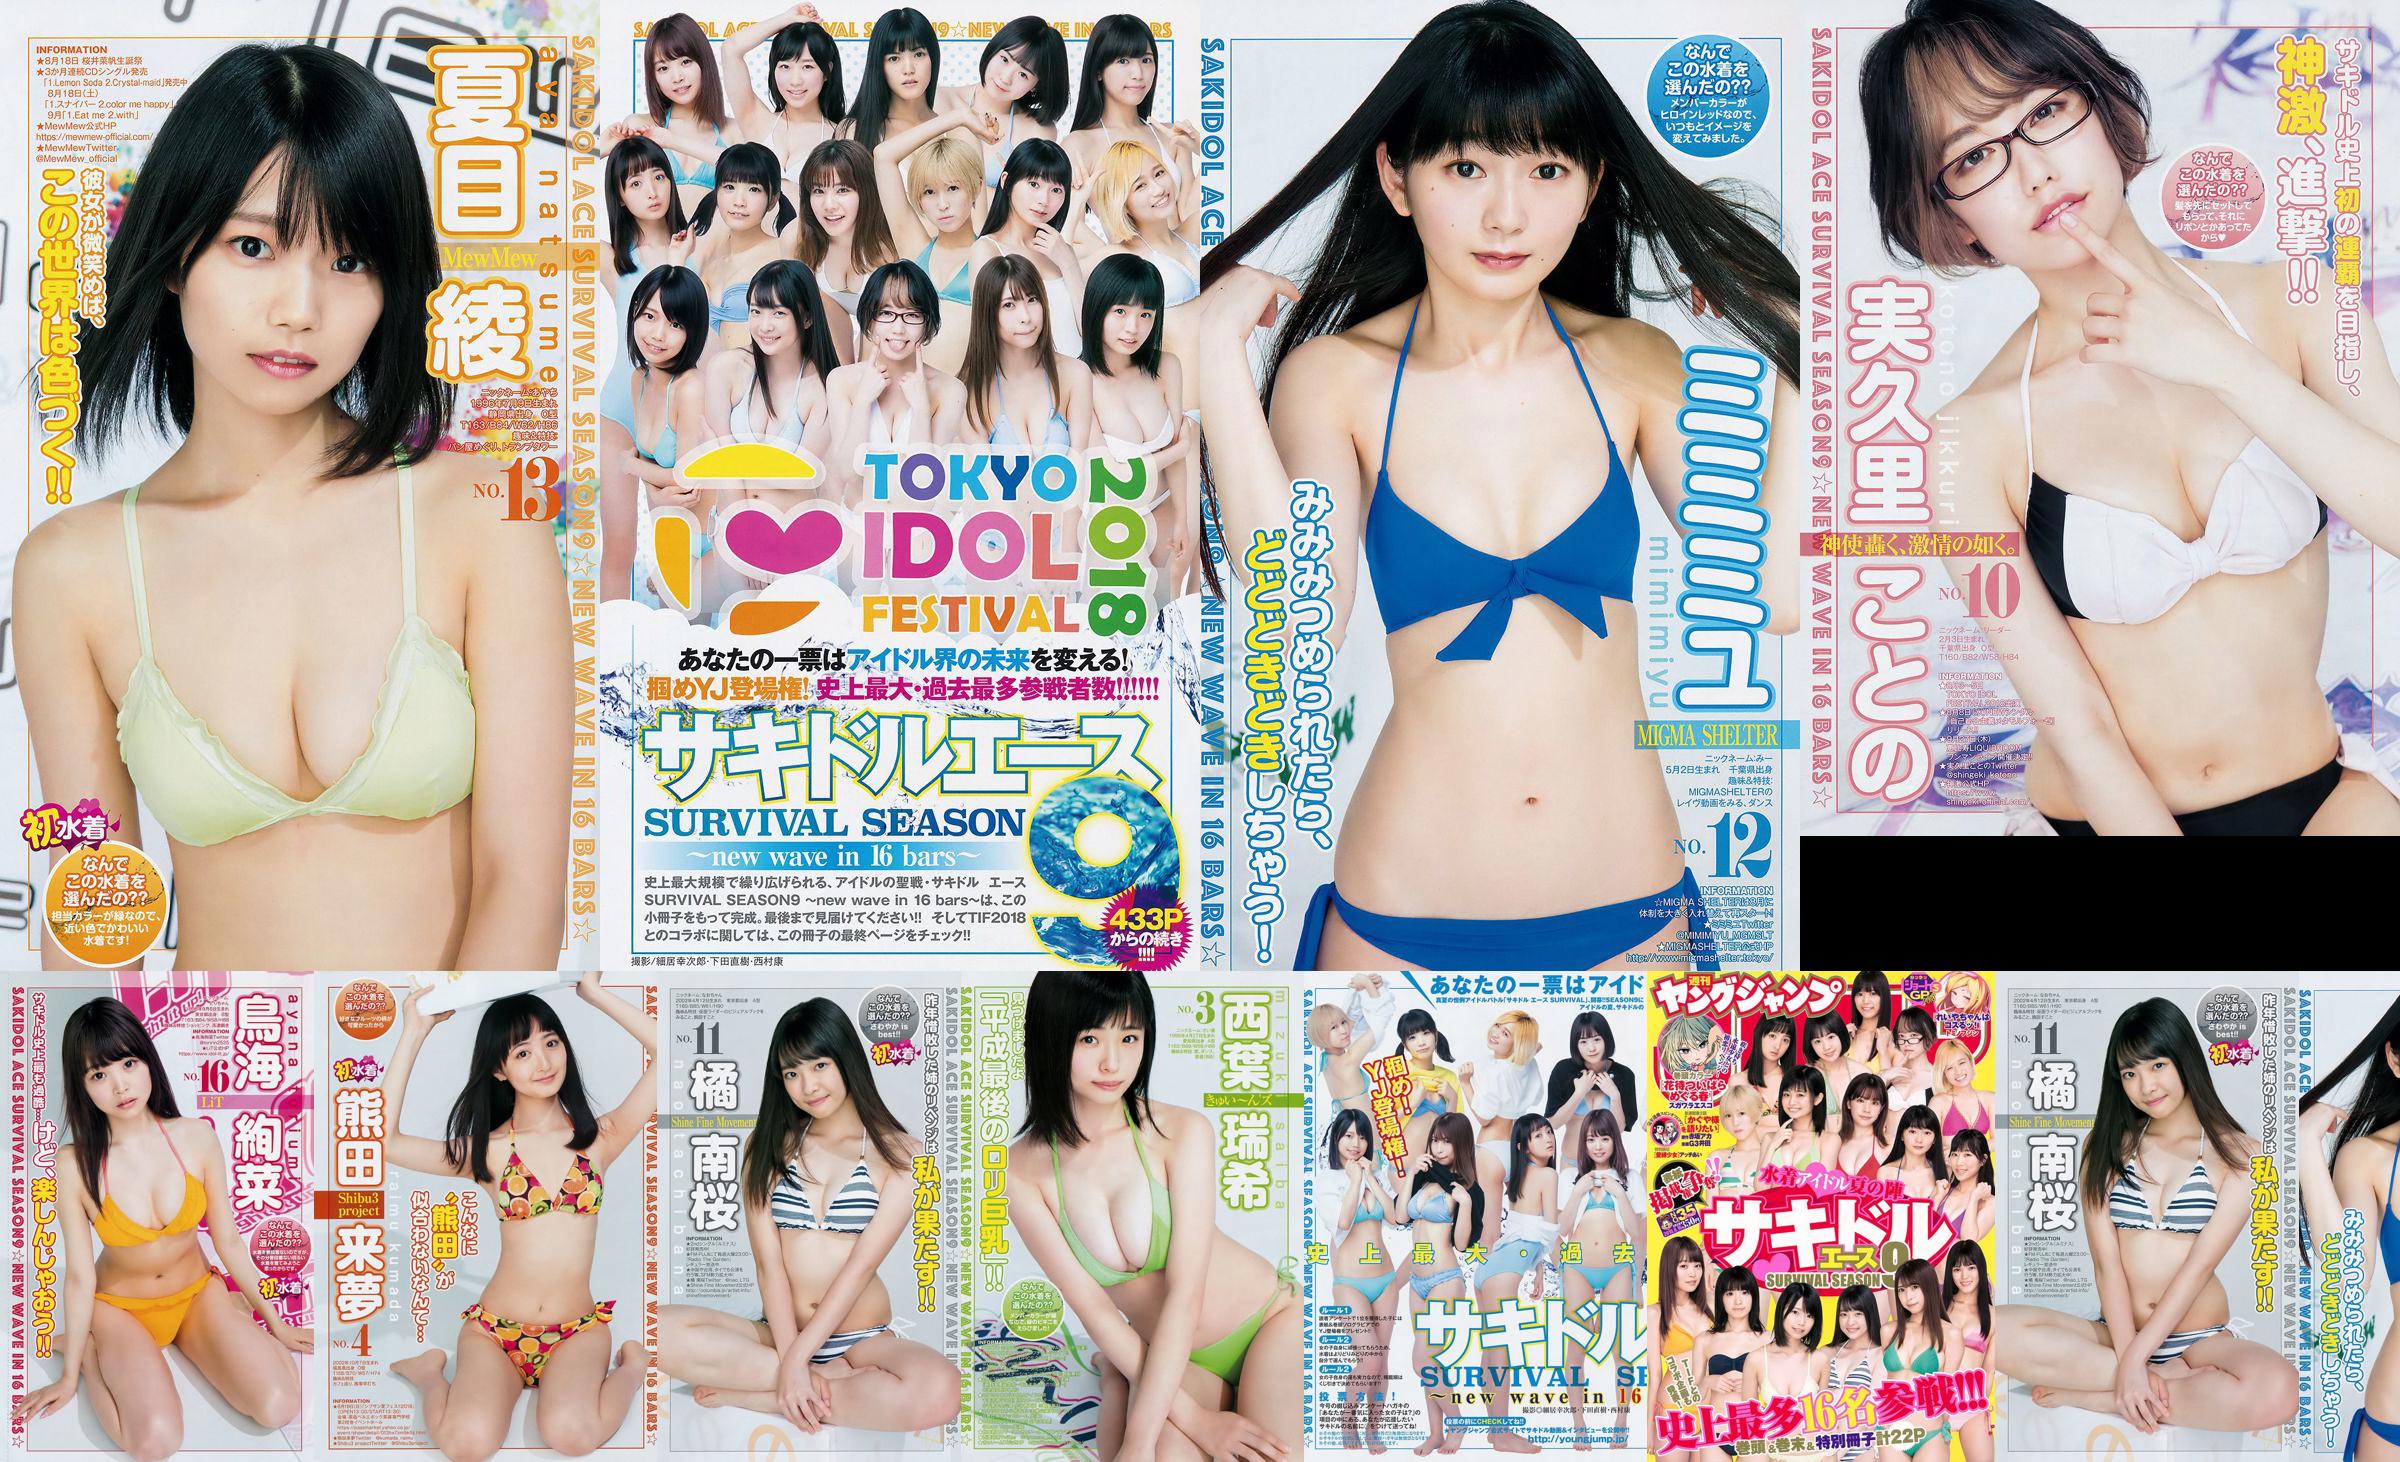 [FLASH] Ikumi Hisamatsu Risa Hirako Ren Ishikawa Angel Moe AKB48 Kaho Shibuya Misuzu Hayashi Ririka 2015.04.21 Foto Toshi No.2b8c39 Seite 5